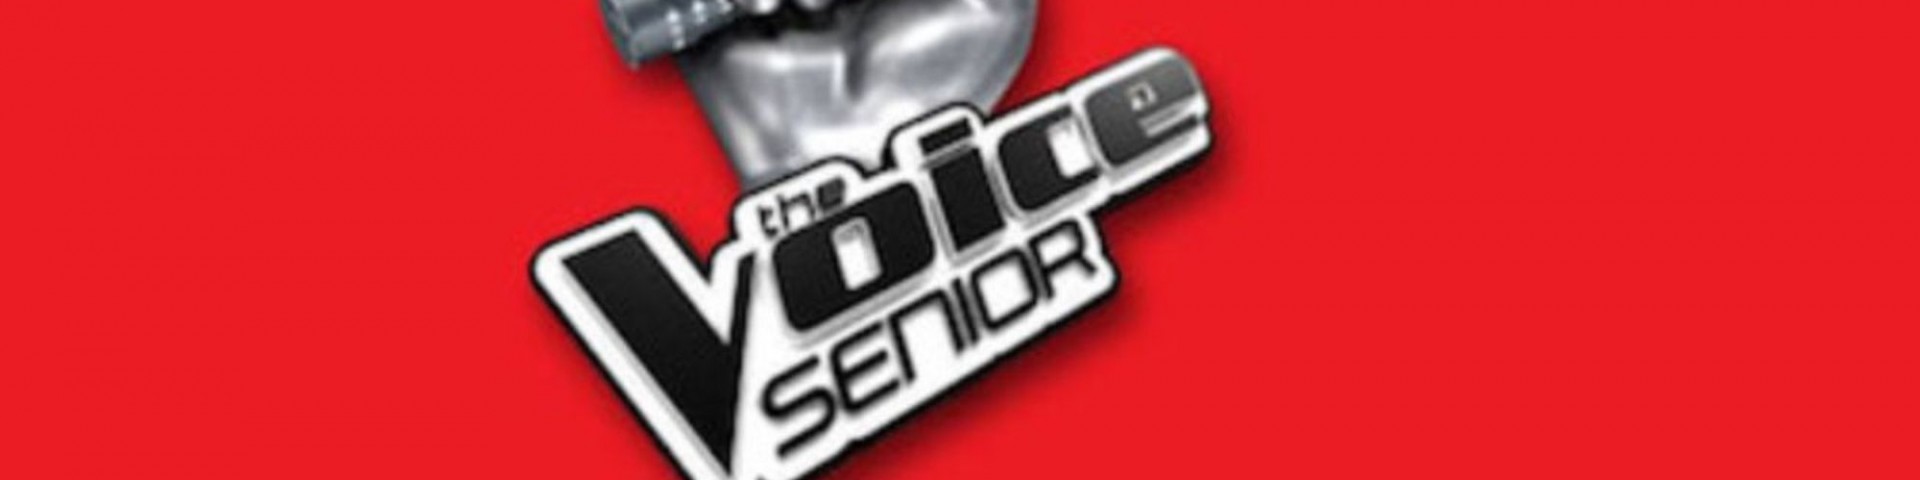 The Voice Senior è in diretta o registrato?